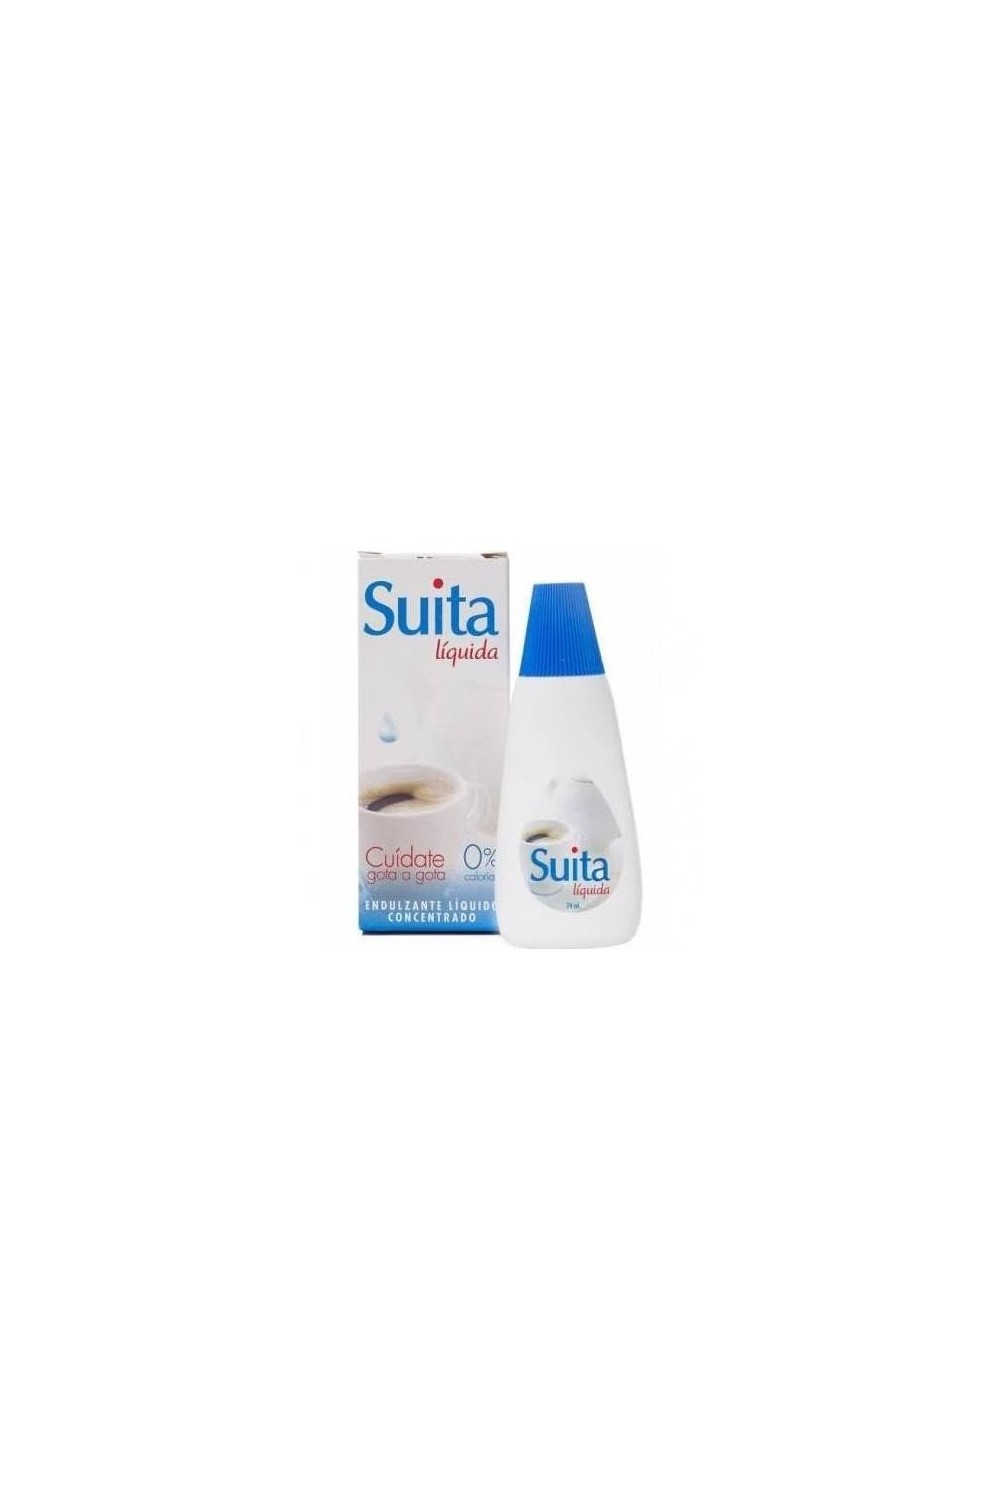 URIACH - Suita Oral Liquid 24 C.C.